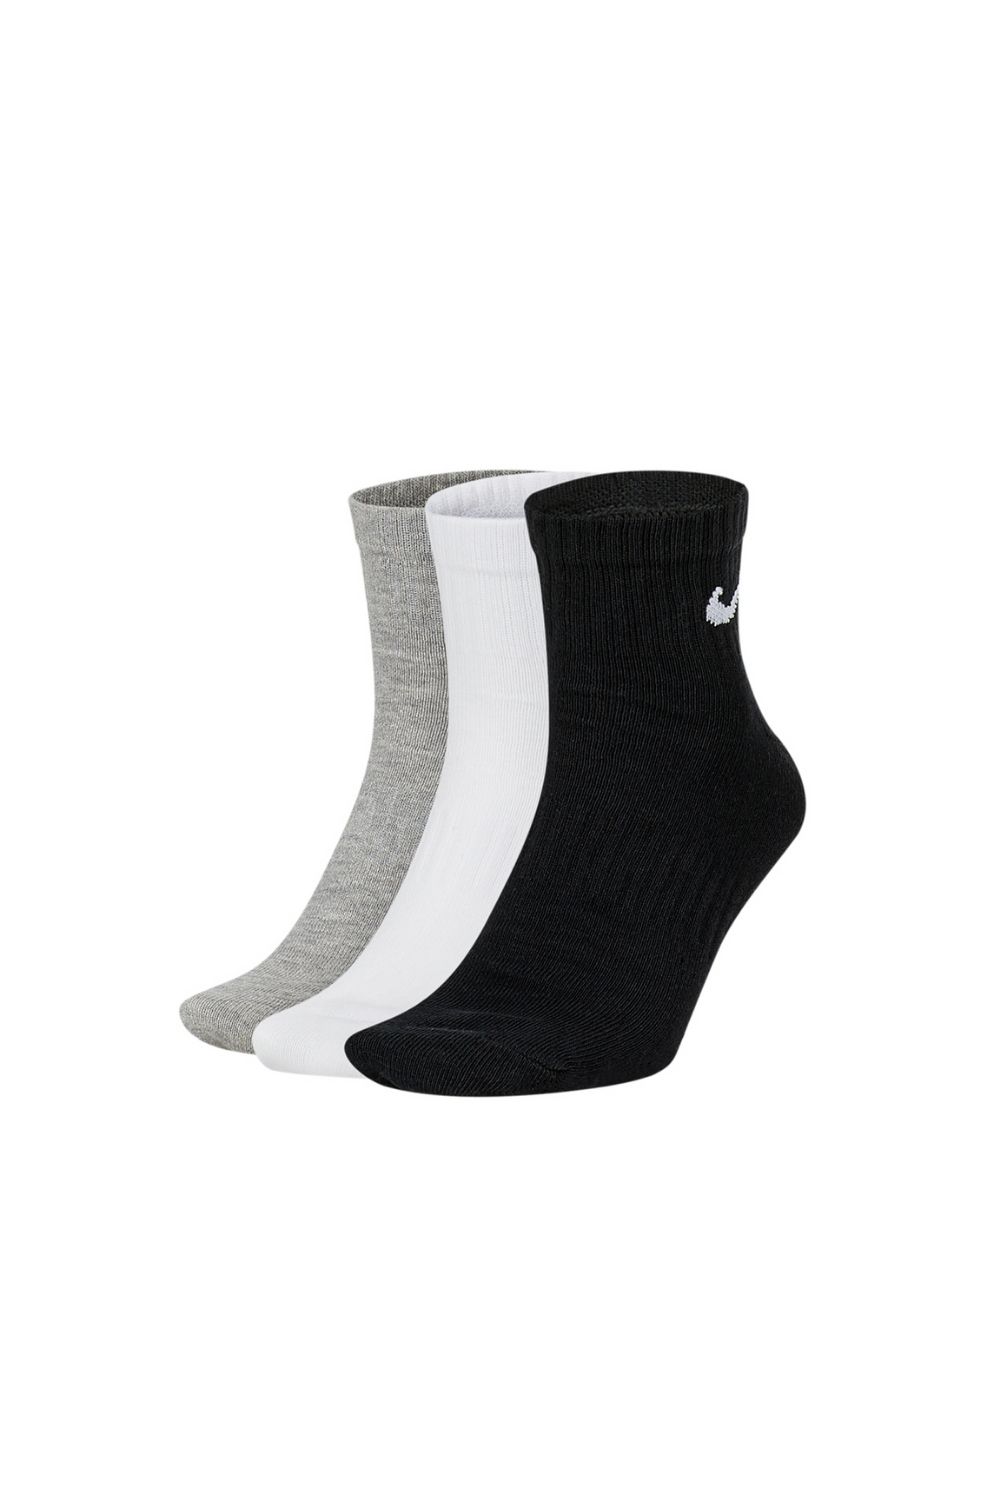 NIKE - Σετ από 3 ζευγάρια κάλτσες NIKE μαύρες-γκρι-λευκές Γυναικεία/Αξεσουάρ/Κάλτσες